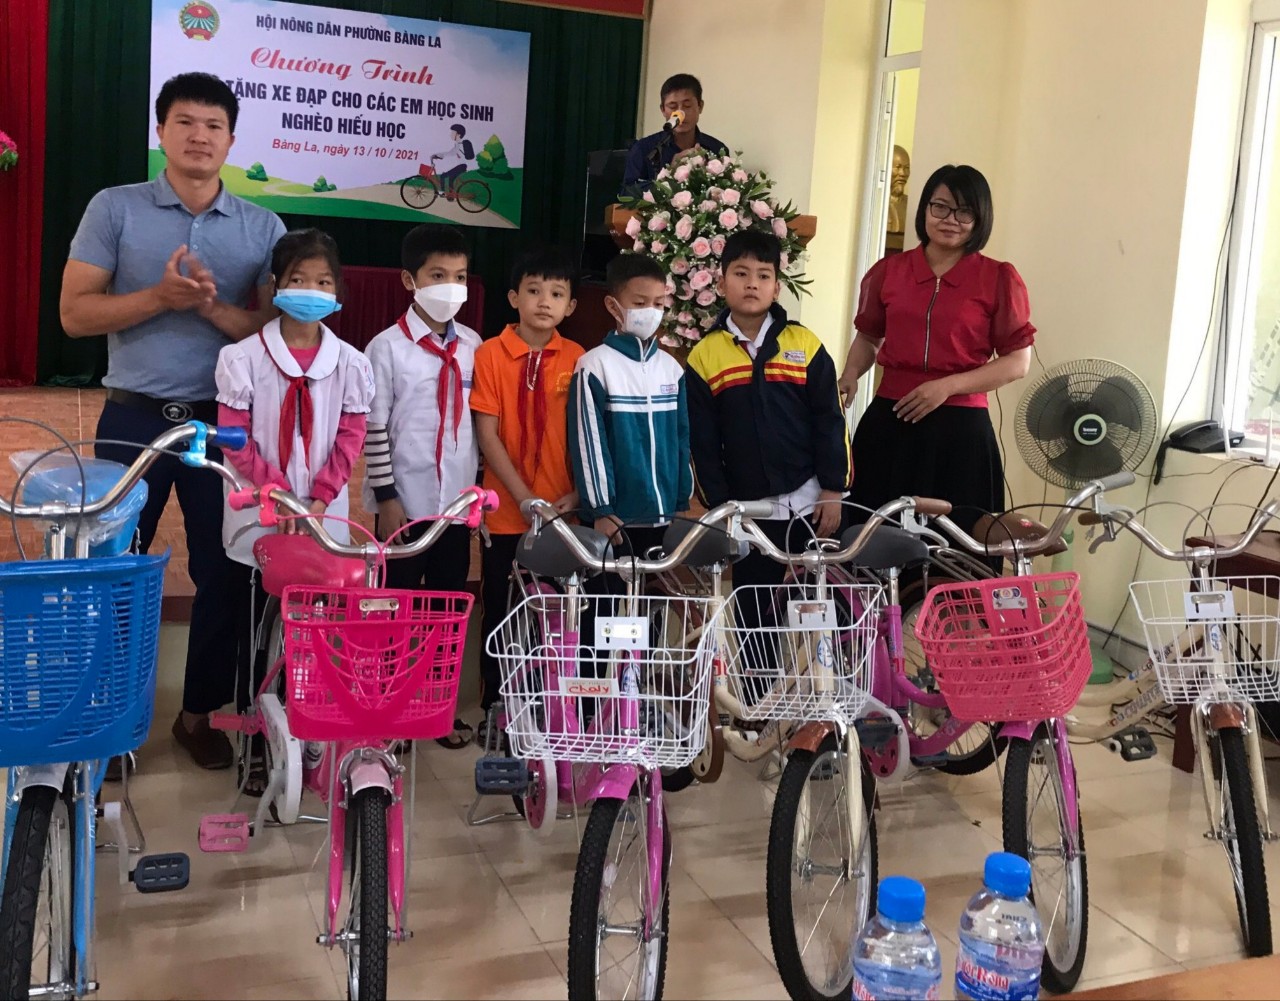 Hội Nông dân phường Bàng La: Trao tặng xe đạp cho các em học sinh nghèo hiếu học - Ảnh 2.